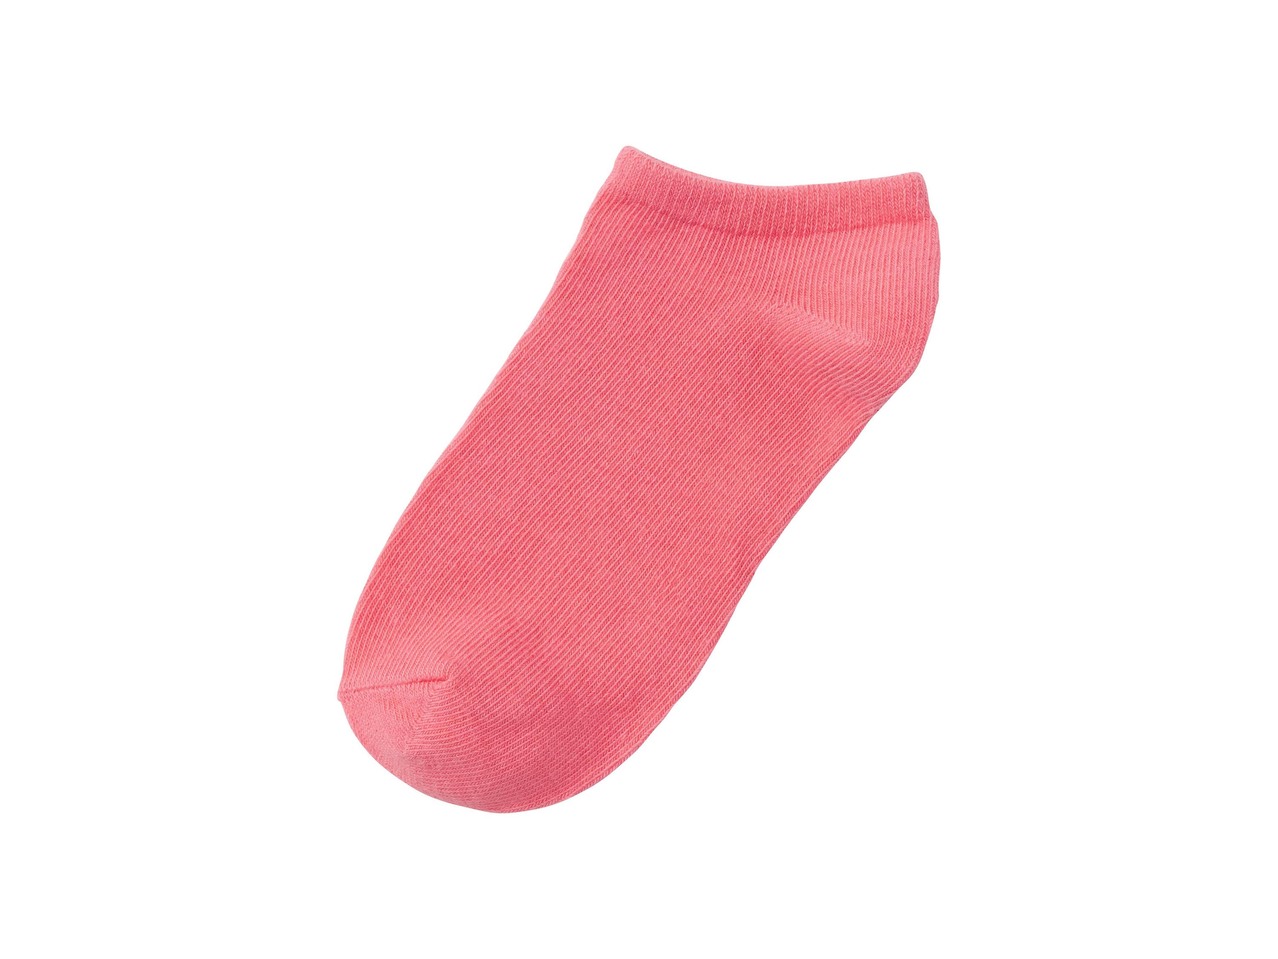 Girls' Trainer Socks, 3 Pairs